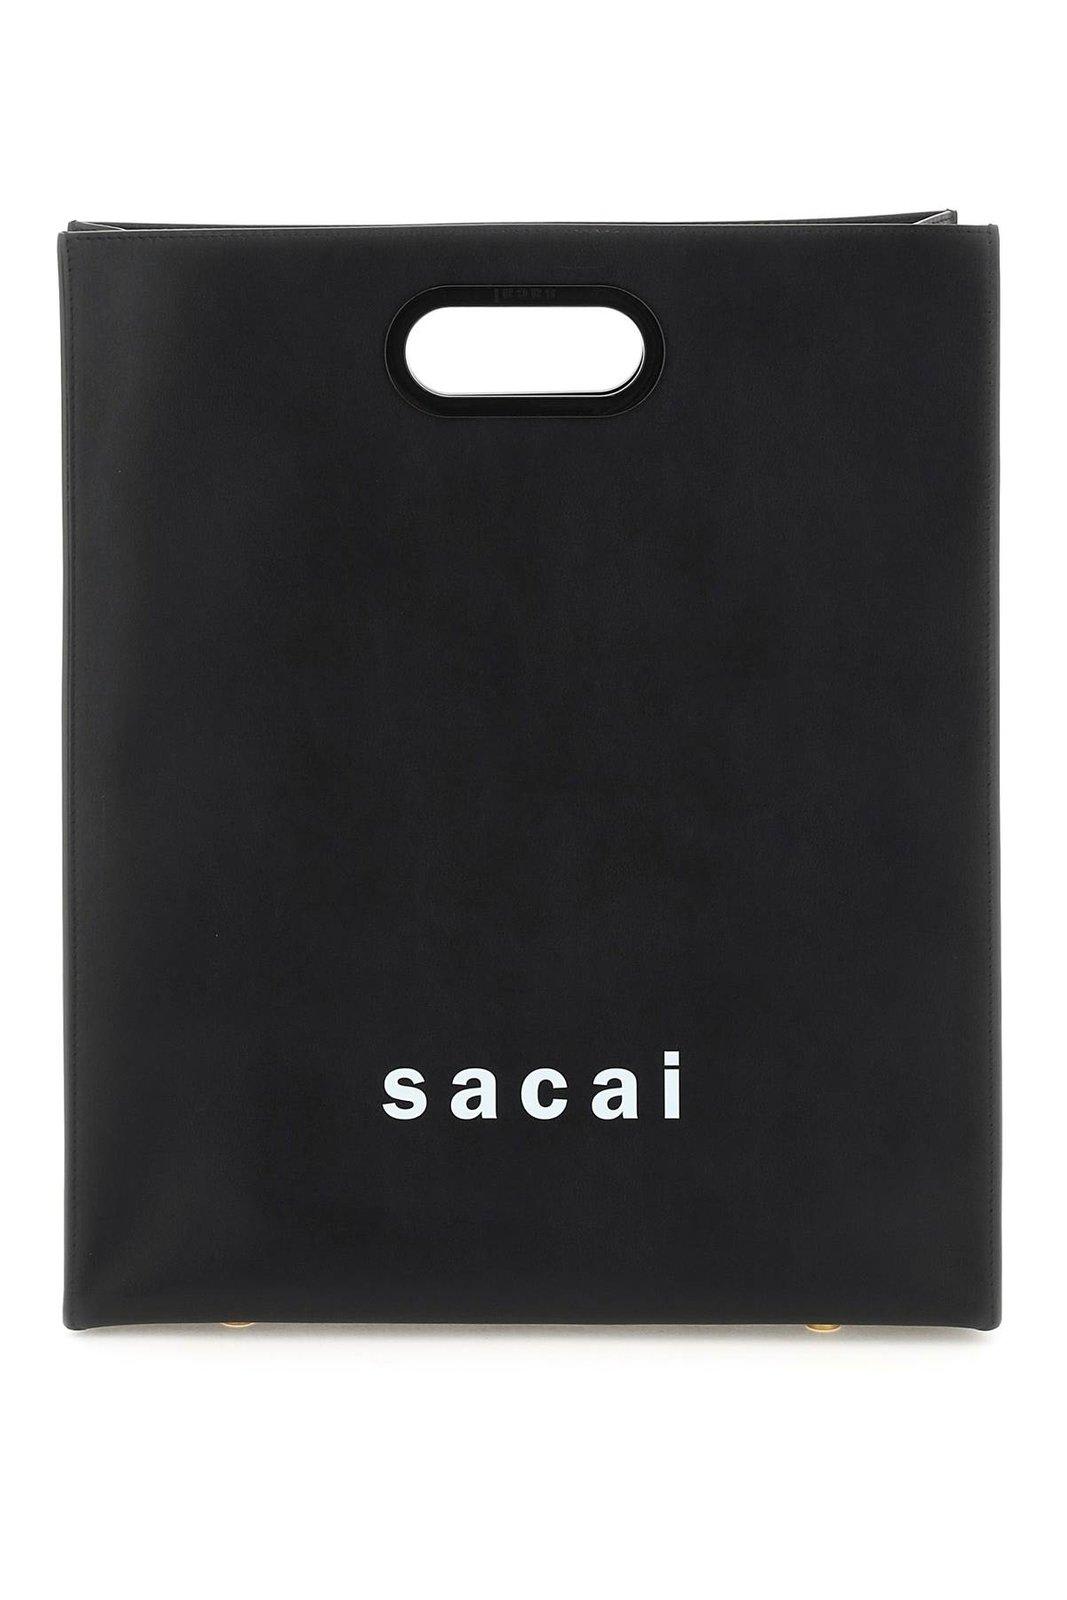 Sacai New Shopper Medium Tote Bag